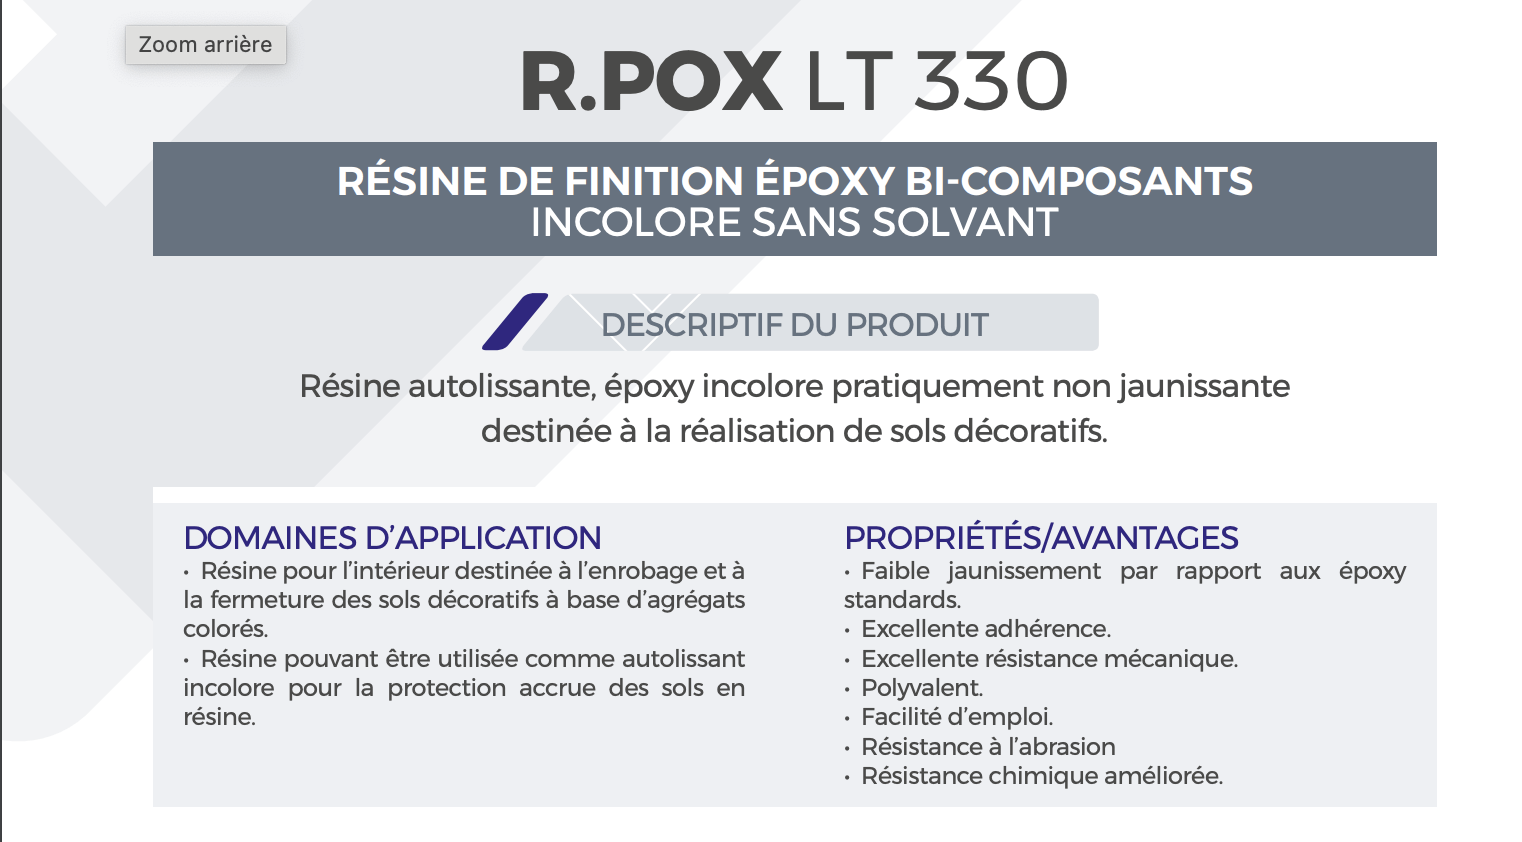 RPOX LT 330 - résine de finition époxy bi-composants incolore sans solvant